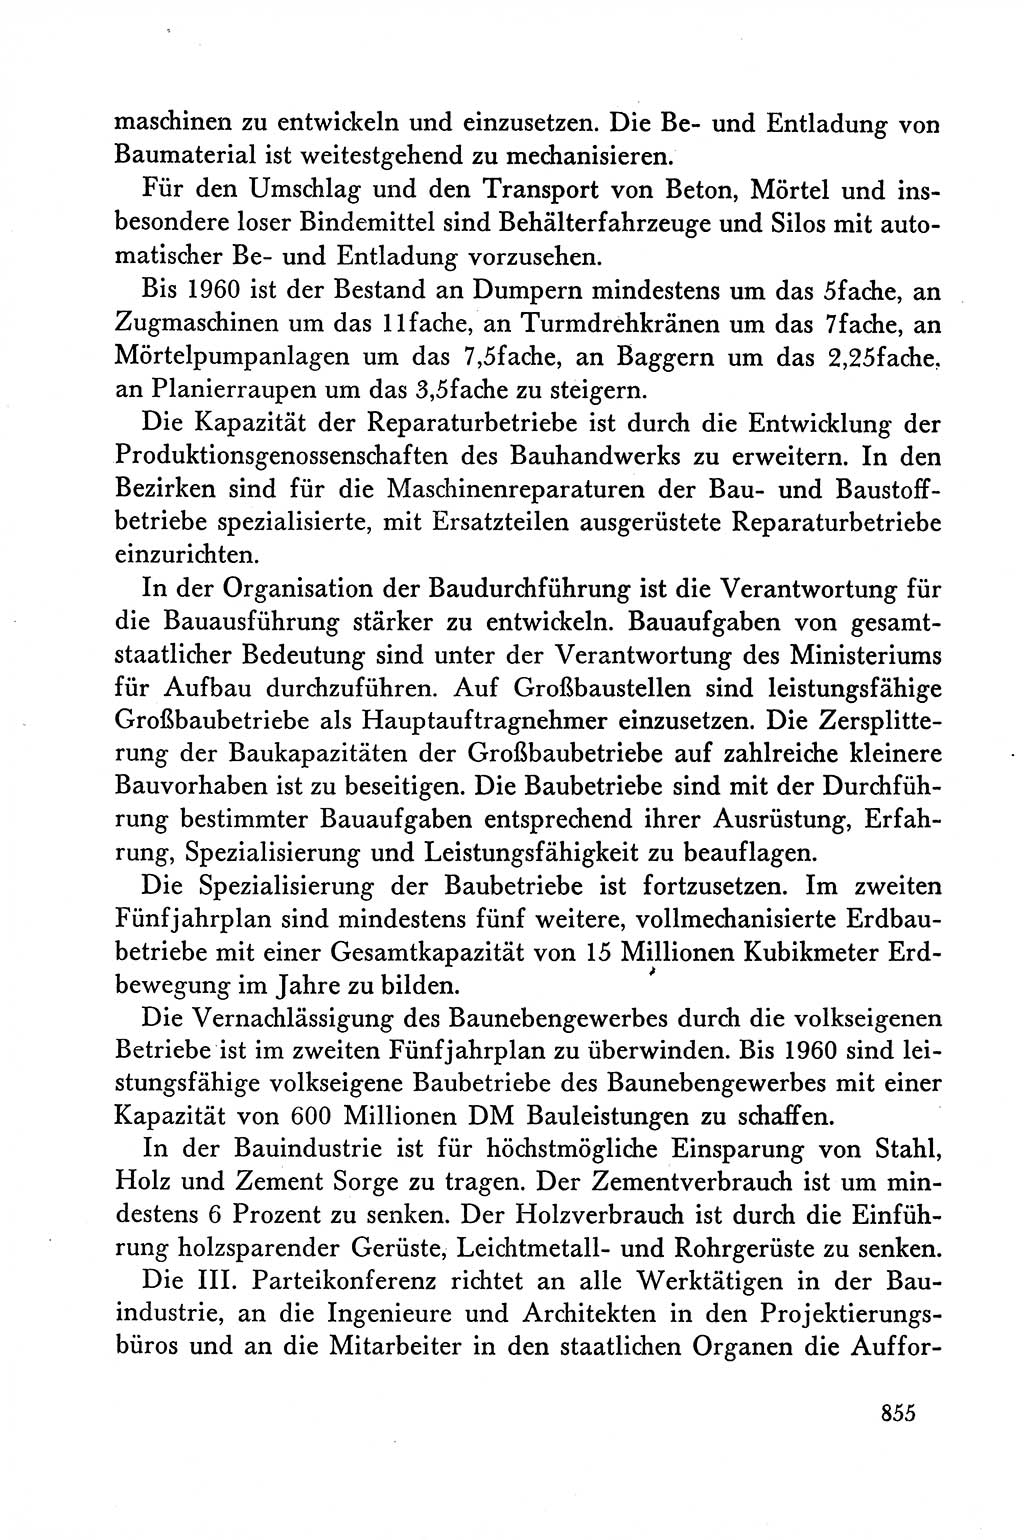 Dokumente der Sozialistischen Einheitspartei Deutschlands (SED) [Deutsche Demokratische Republik (DDR)] 1958-1959, Seite 855 (Dok. SED DDR 1958-1959, S. 855)